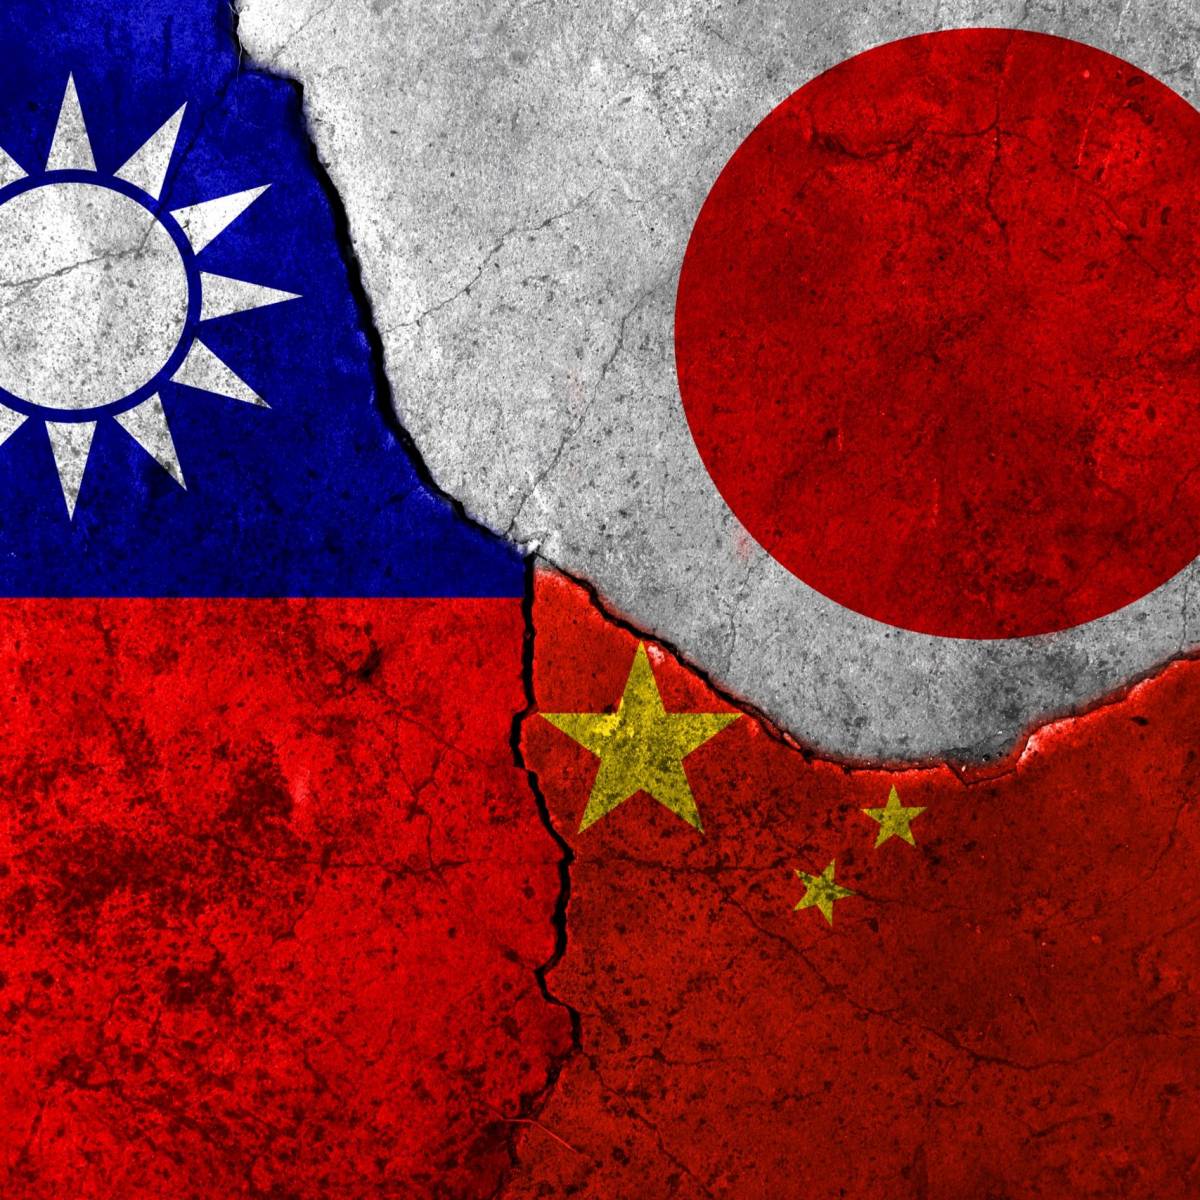 Тайваньский вопрос: Токио посылает разнонаправленные сигналы Пекину